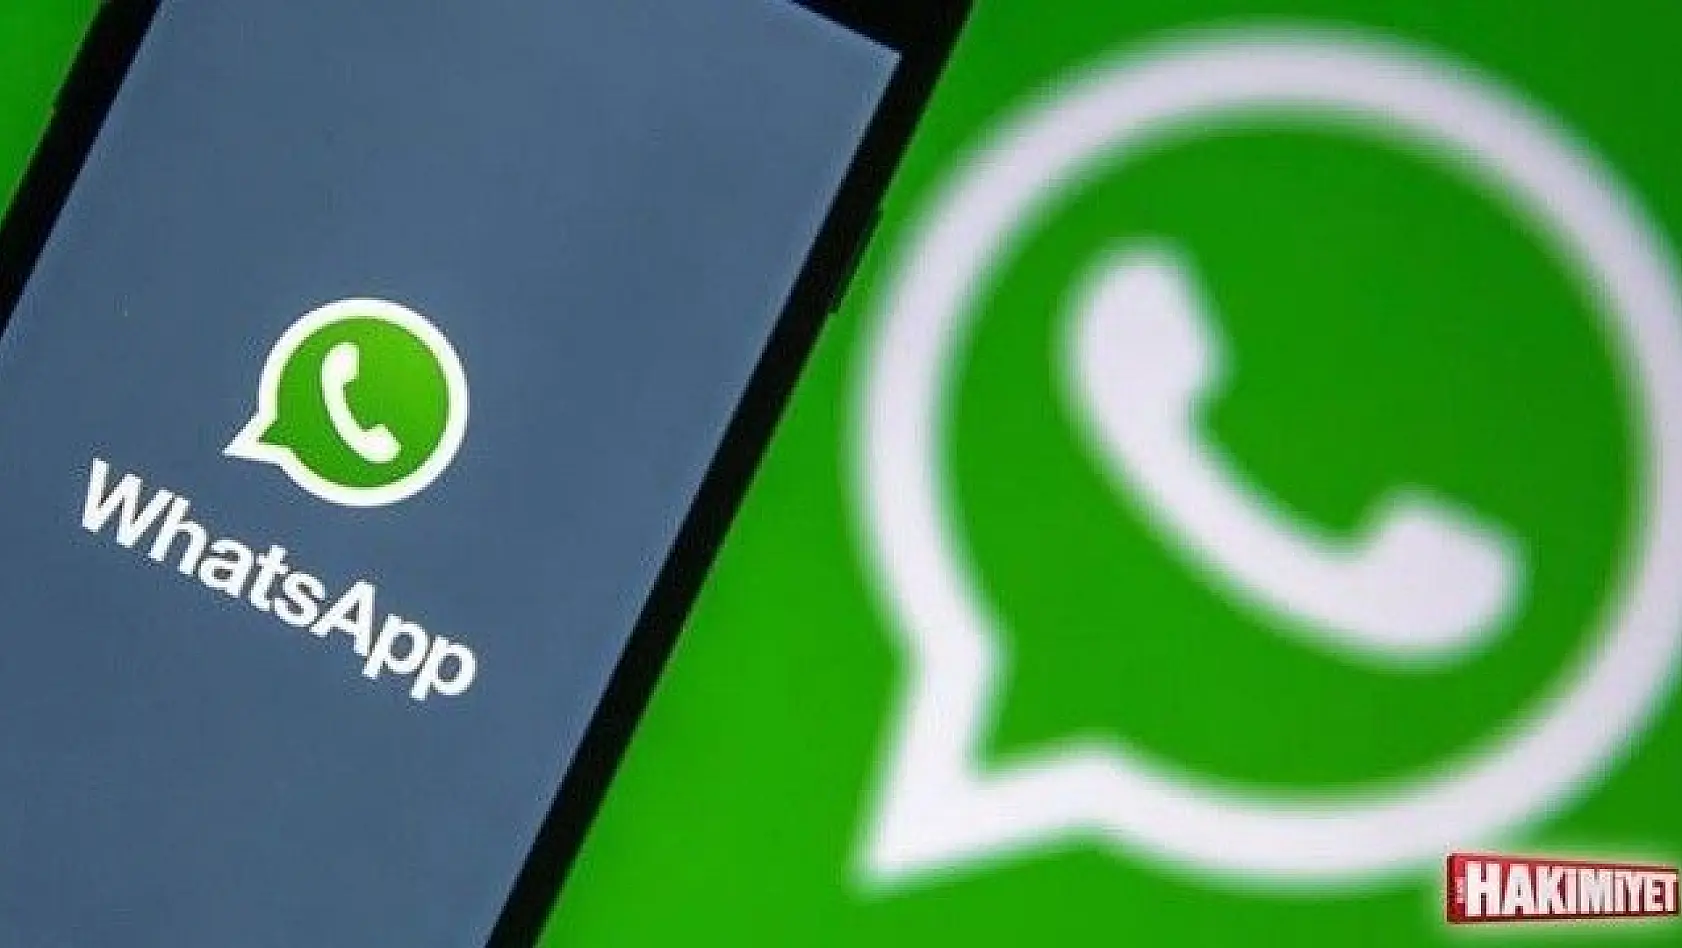 Rekabet Kurulu, Facebook ve WhatsApp hakkında resen soruşturma başlattı ve WhatsApp verilerinin paylaşılması zorunluluğunu durdurdu